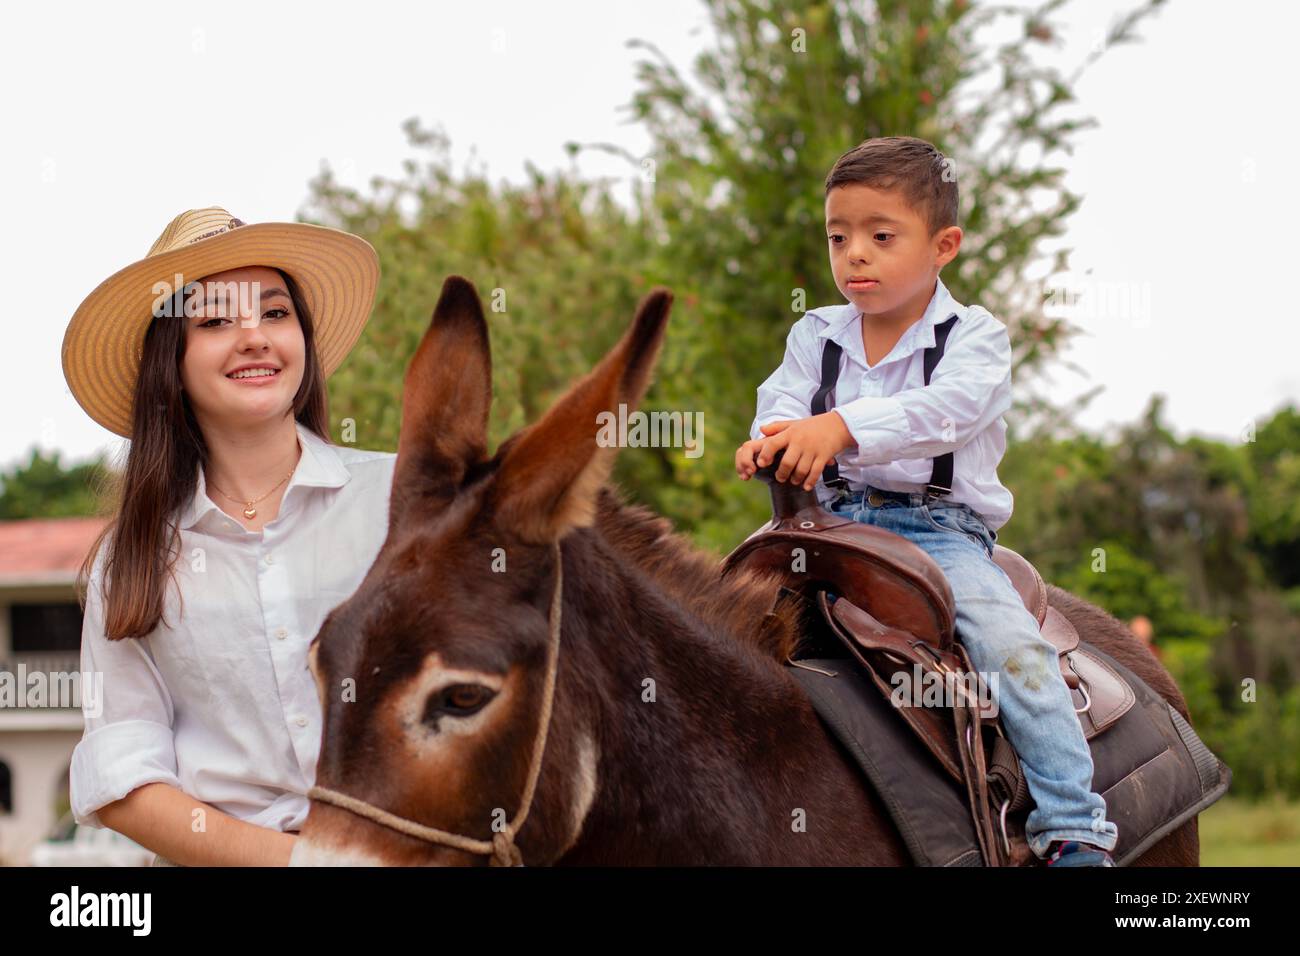 Lebensstil: Die Bauernfamilie macht einen Eselritt Stockfoto